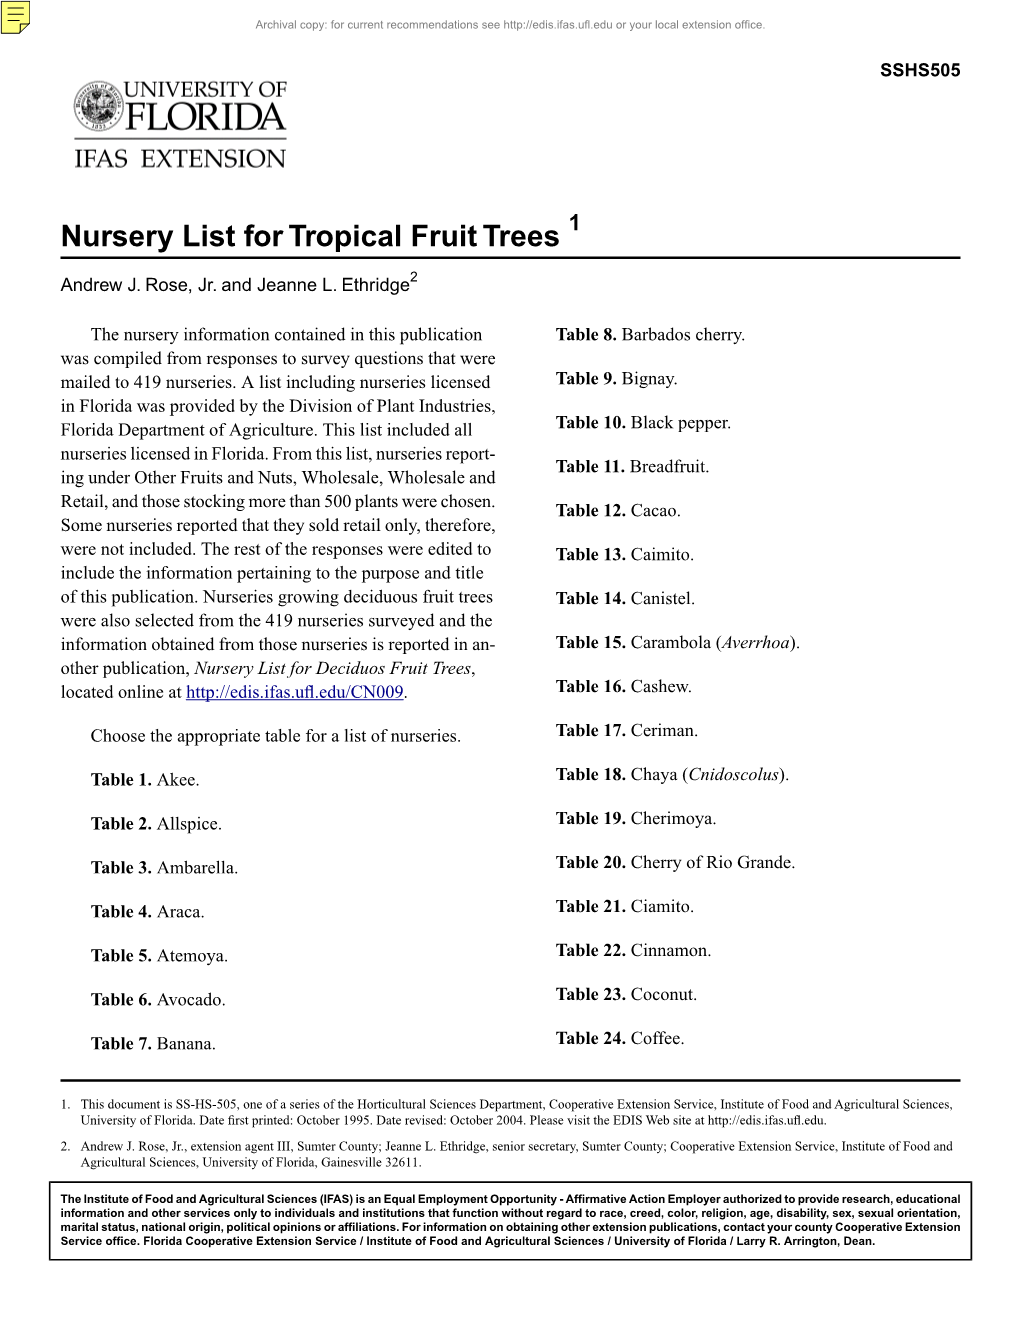 Nursery List for Tropical Fruit Trees 1